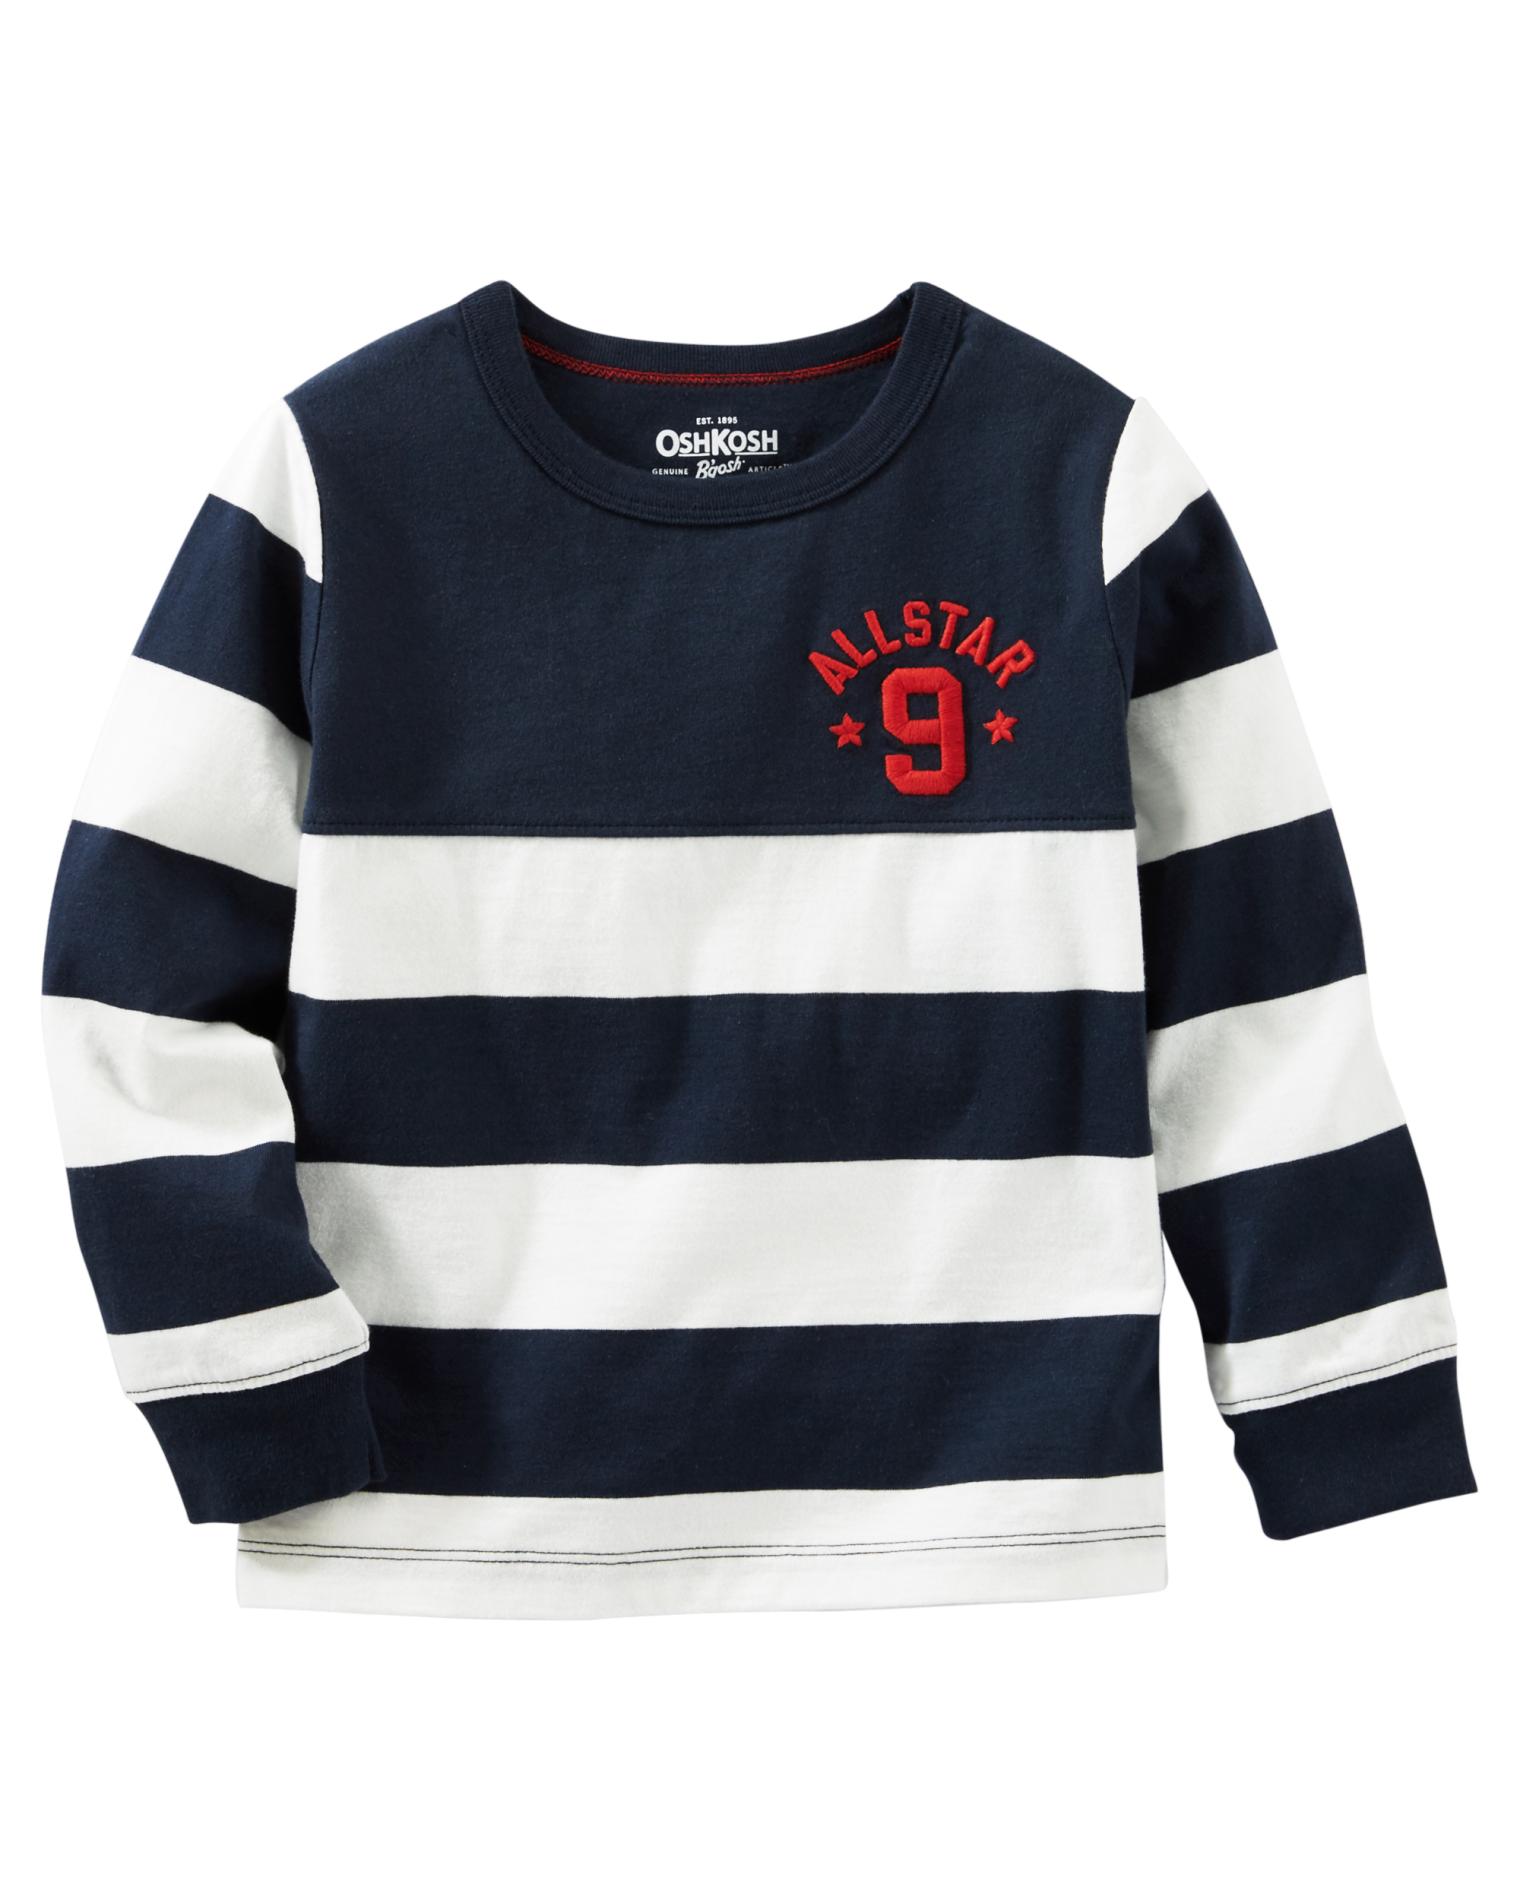 OshKosh Boys' Rugby T-Shirt - Striped